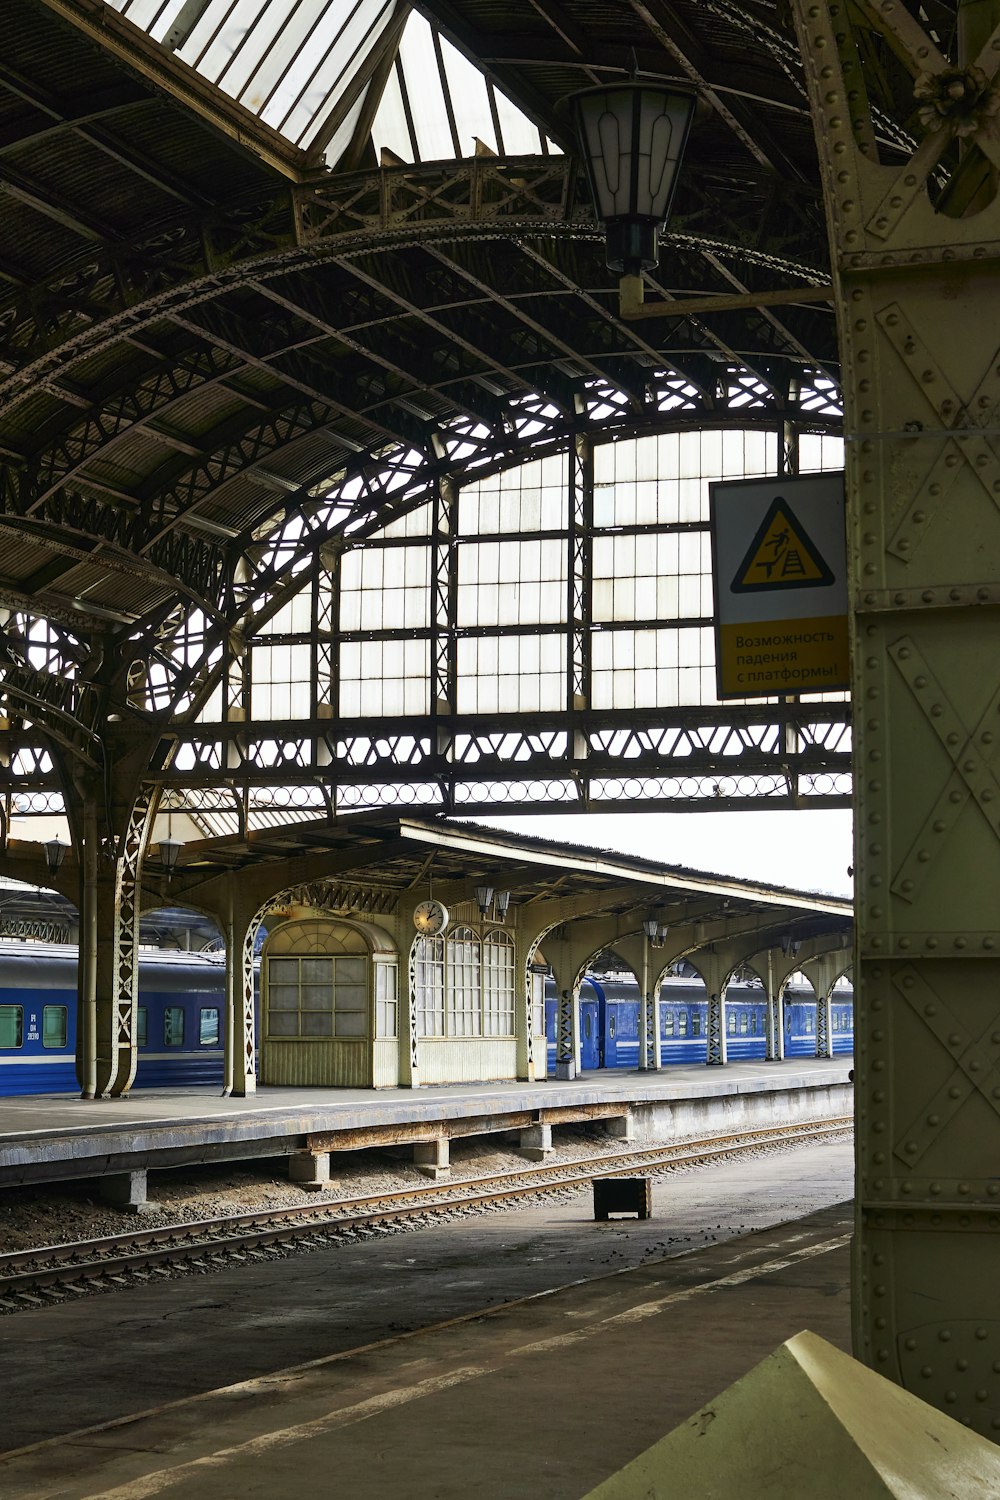 un treno che entra in una stazione ferroviaria vicino a una piattaforma